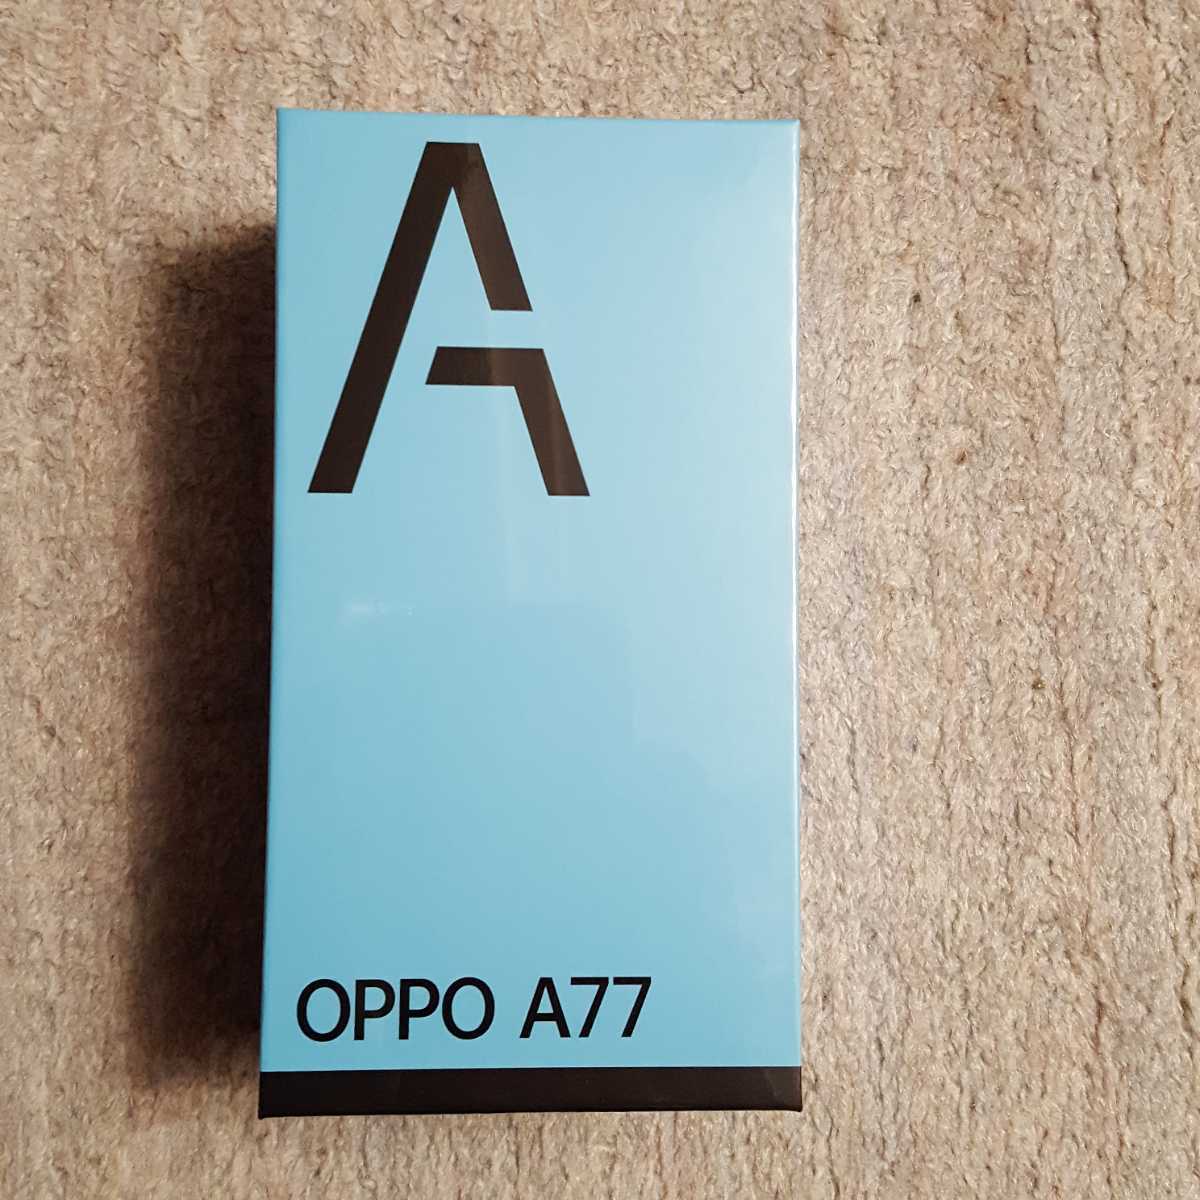 スマートフォン/携帯電話 スマートフォン本体 スイーツ柄 ブルー OPPO A77 ブラック 新品未開封 SIMフリー - 通販 